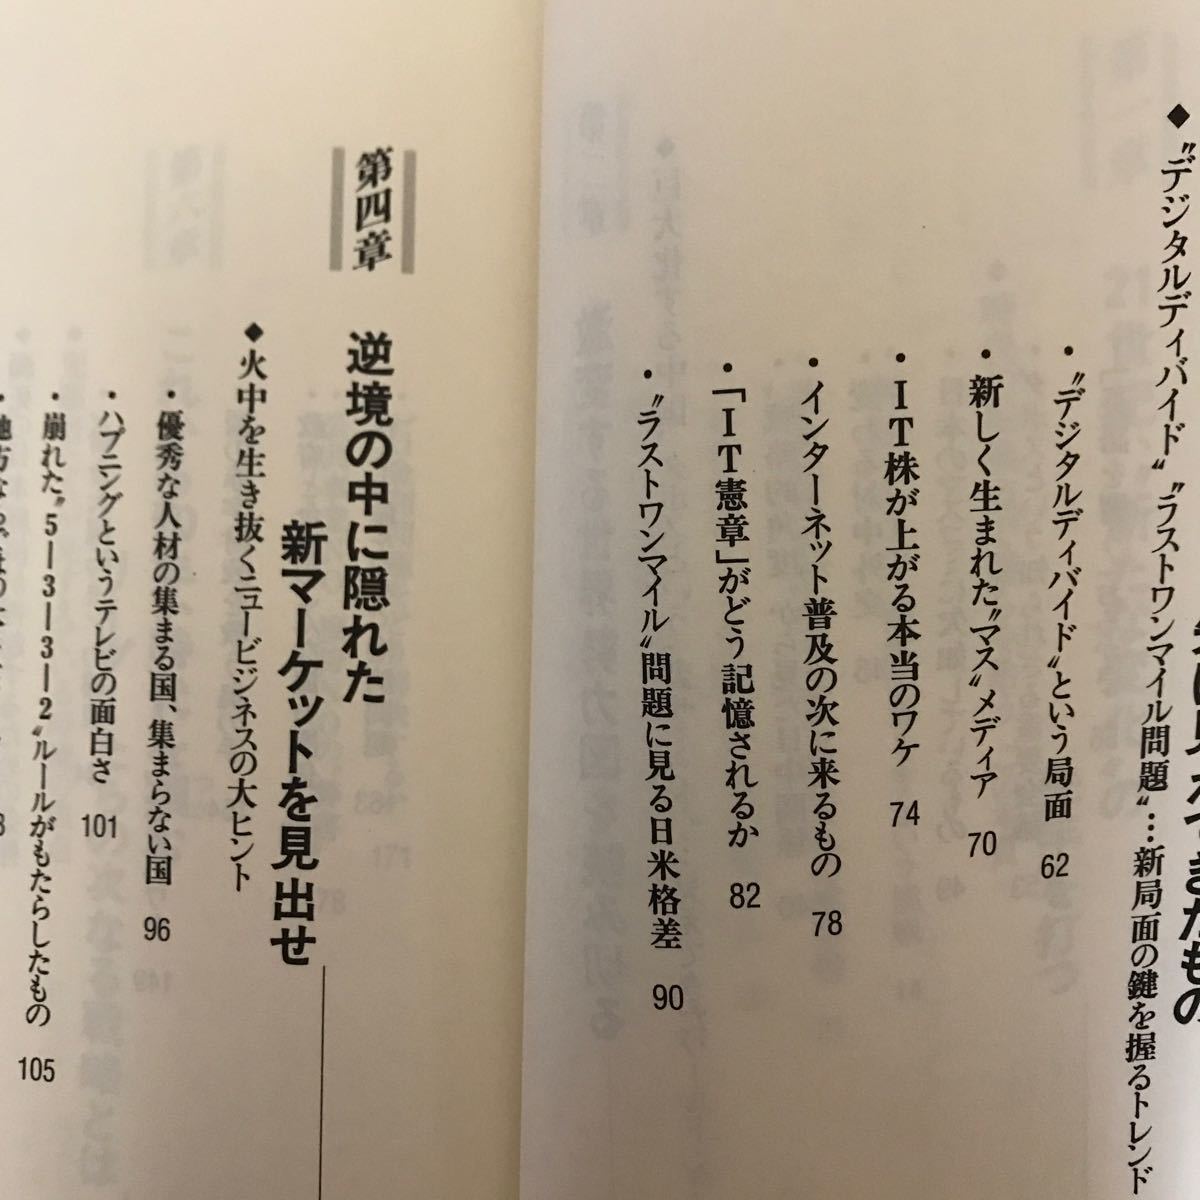 7a 竹村健一　2冊セット 世界の動きこれだけ知っていればいい〈2001年版〉 「変わる日本」で必要とされる人〈2002年版〉単行本_画像9